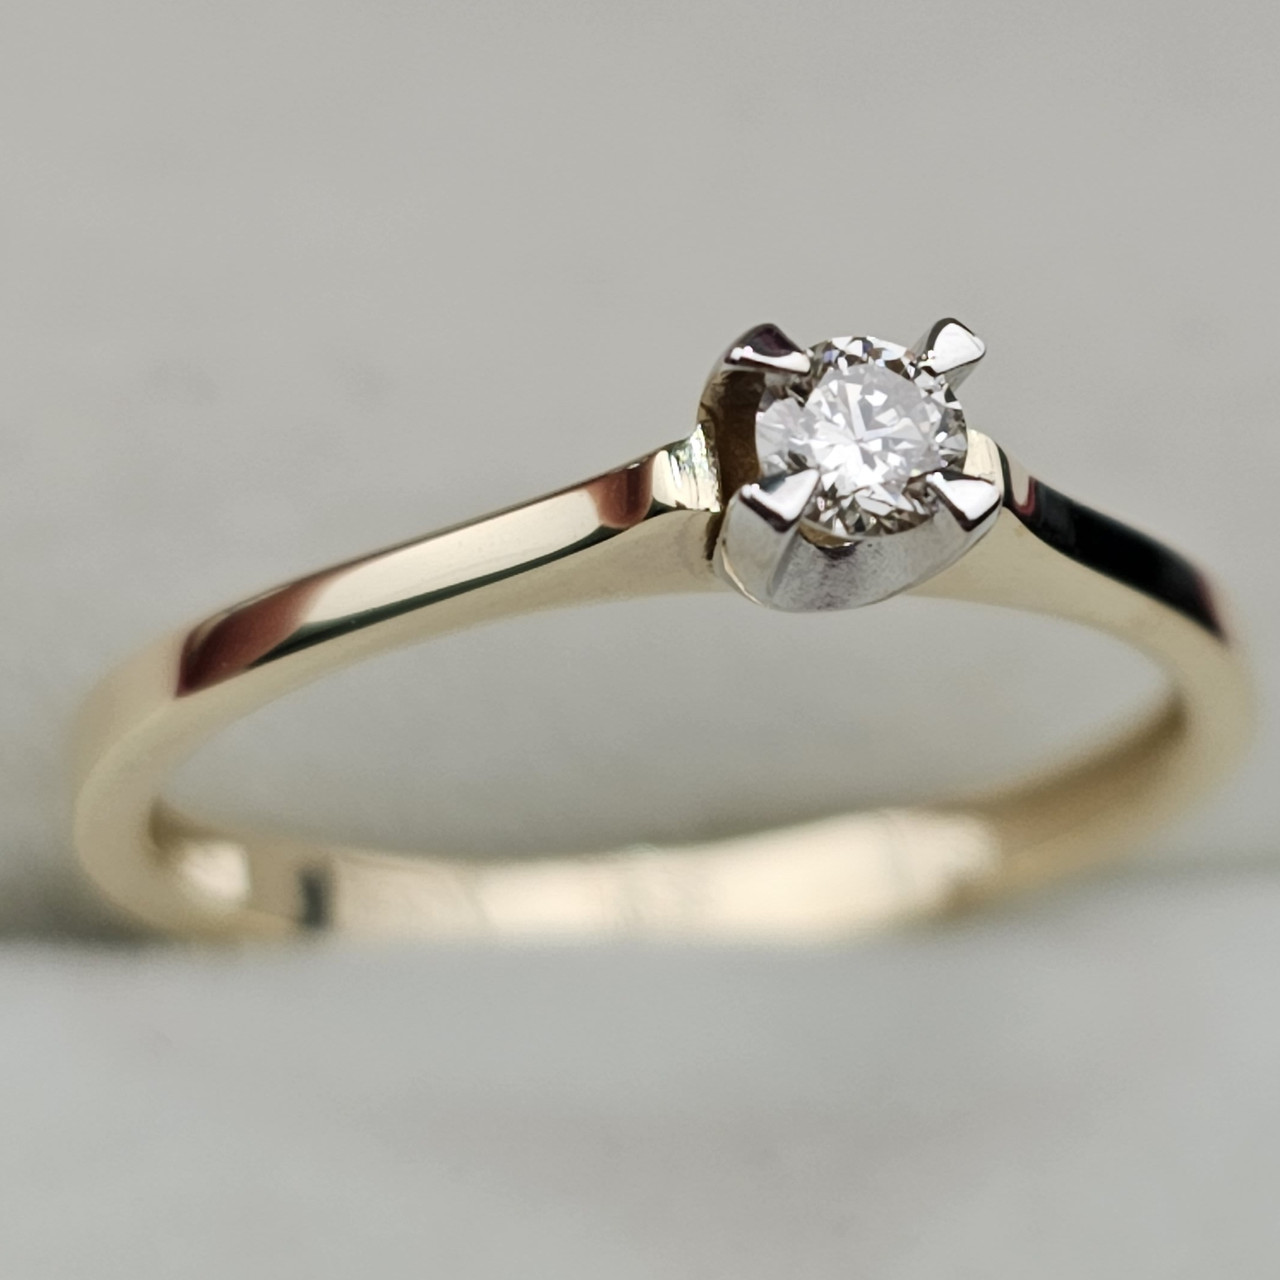 Золотое кольцо с бриллиантами ж/з 0,111 Ct VS1/K   VG  16.5 р